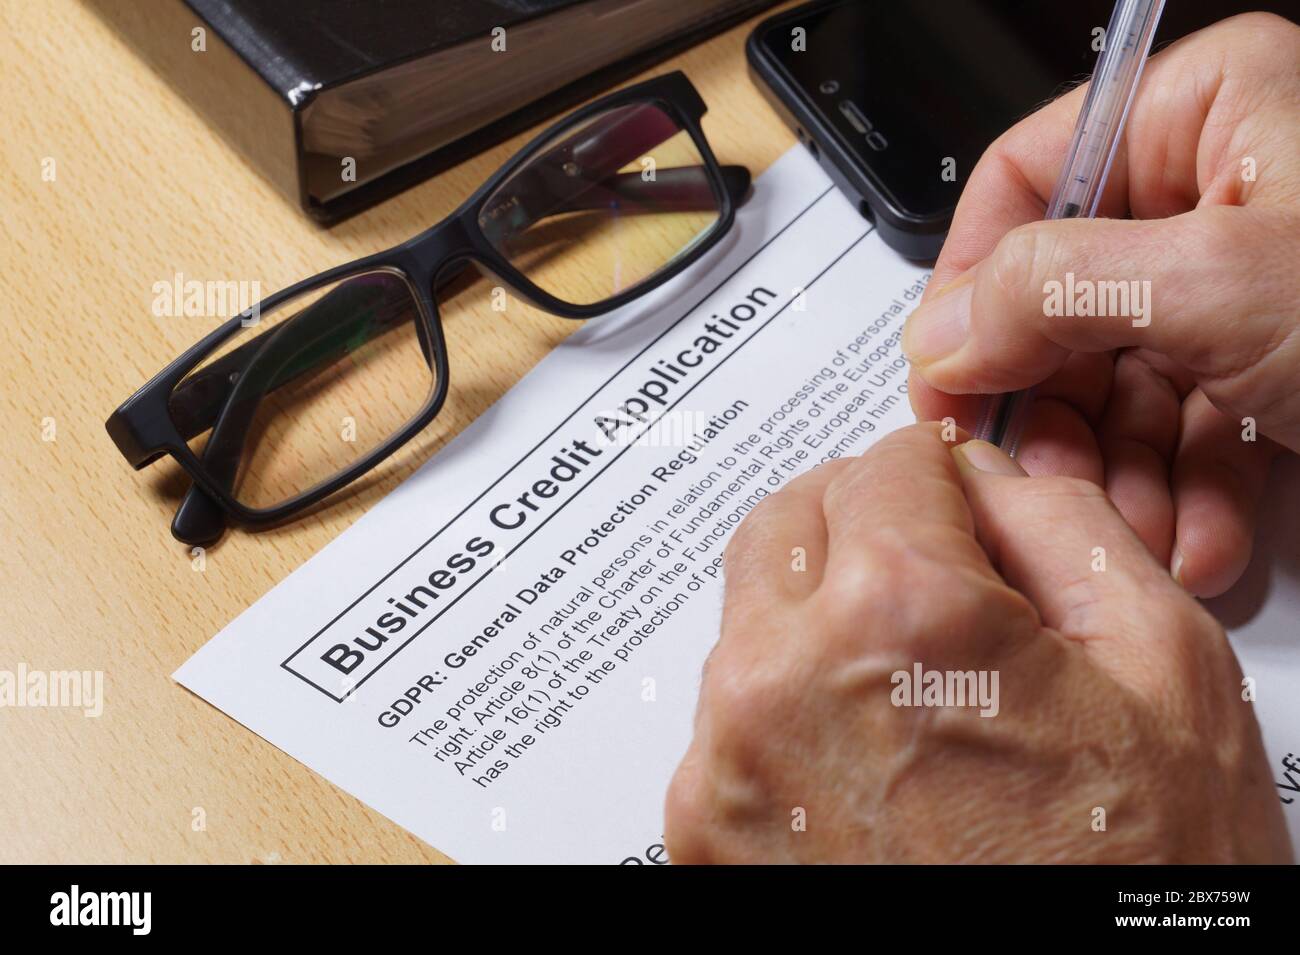 Domanda di credito aziendale. Un uomo compila un modulo di credito con una clausola GDPR (General Data Protection Regulation). Foto Stock